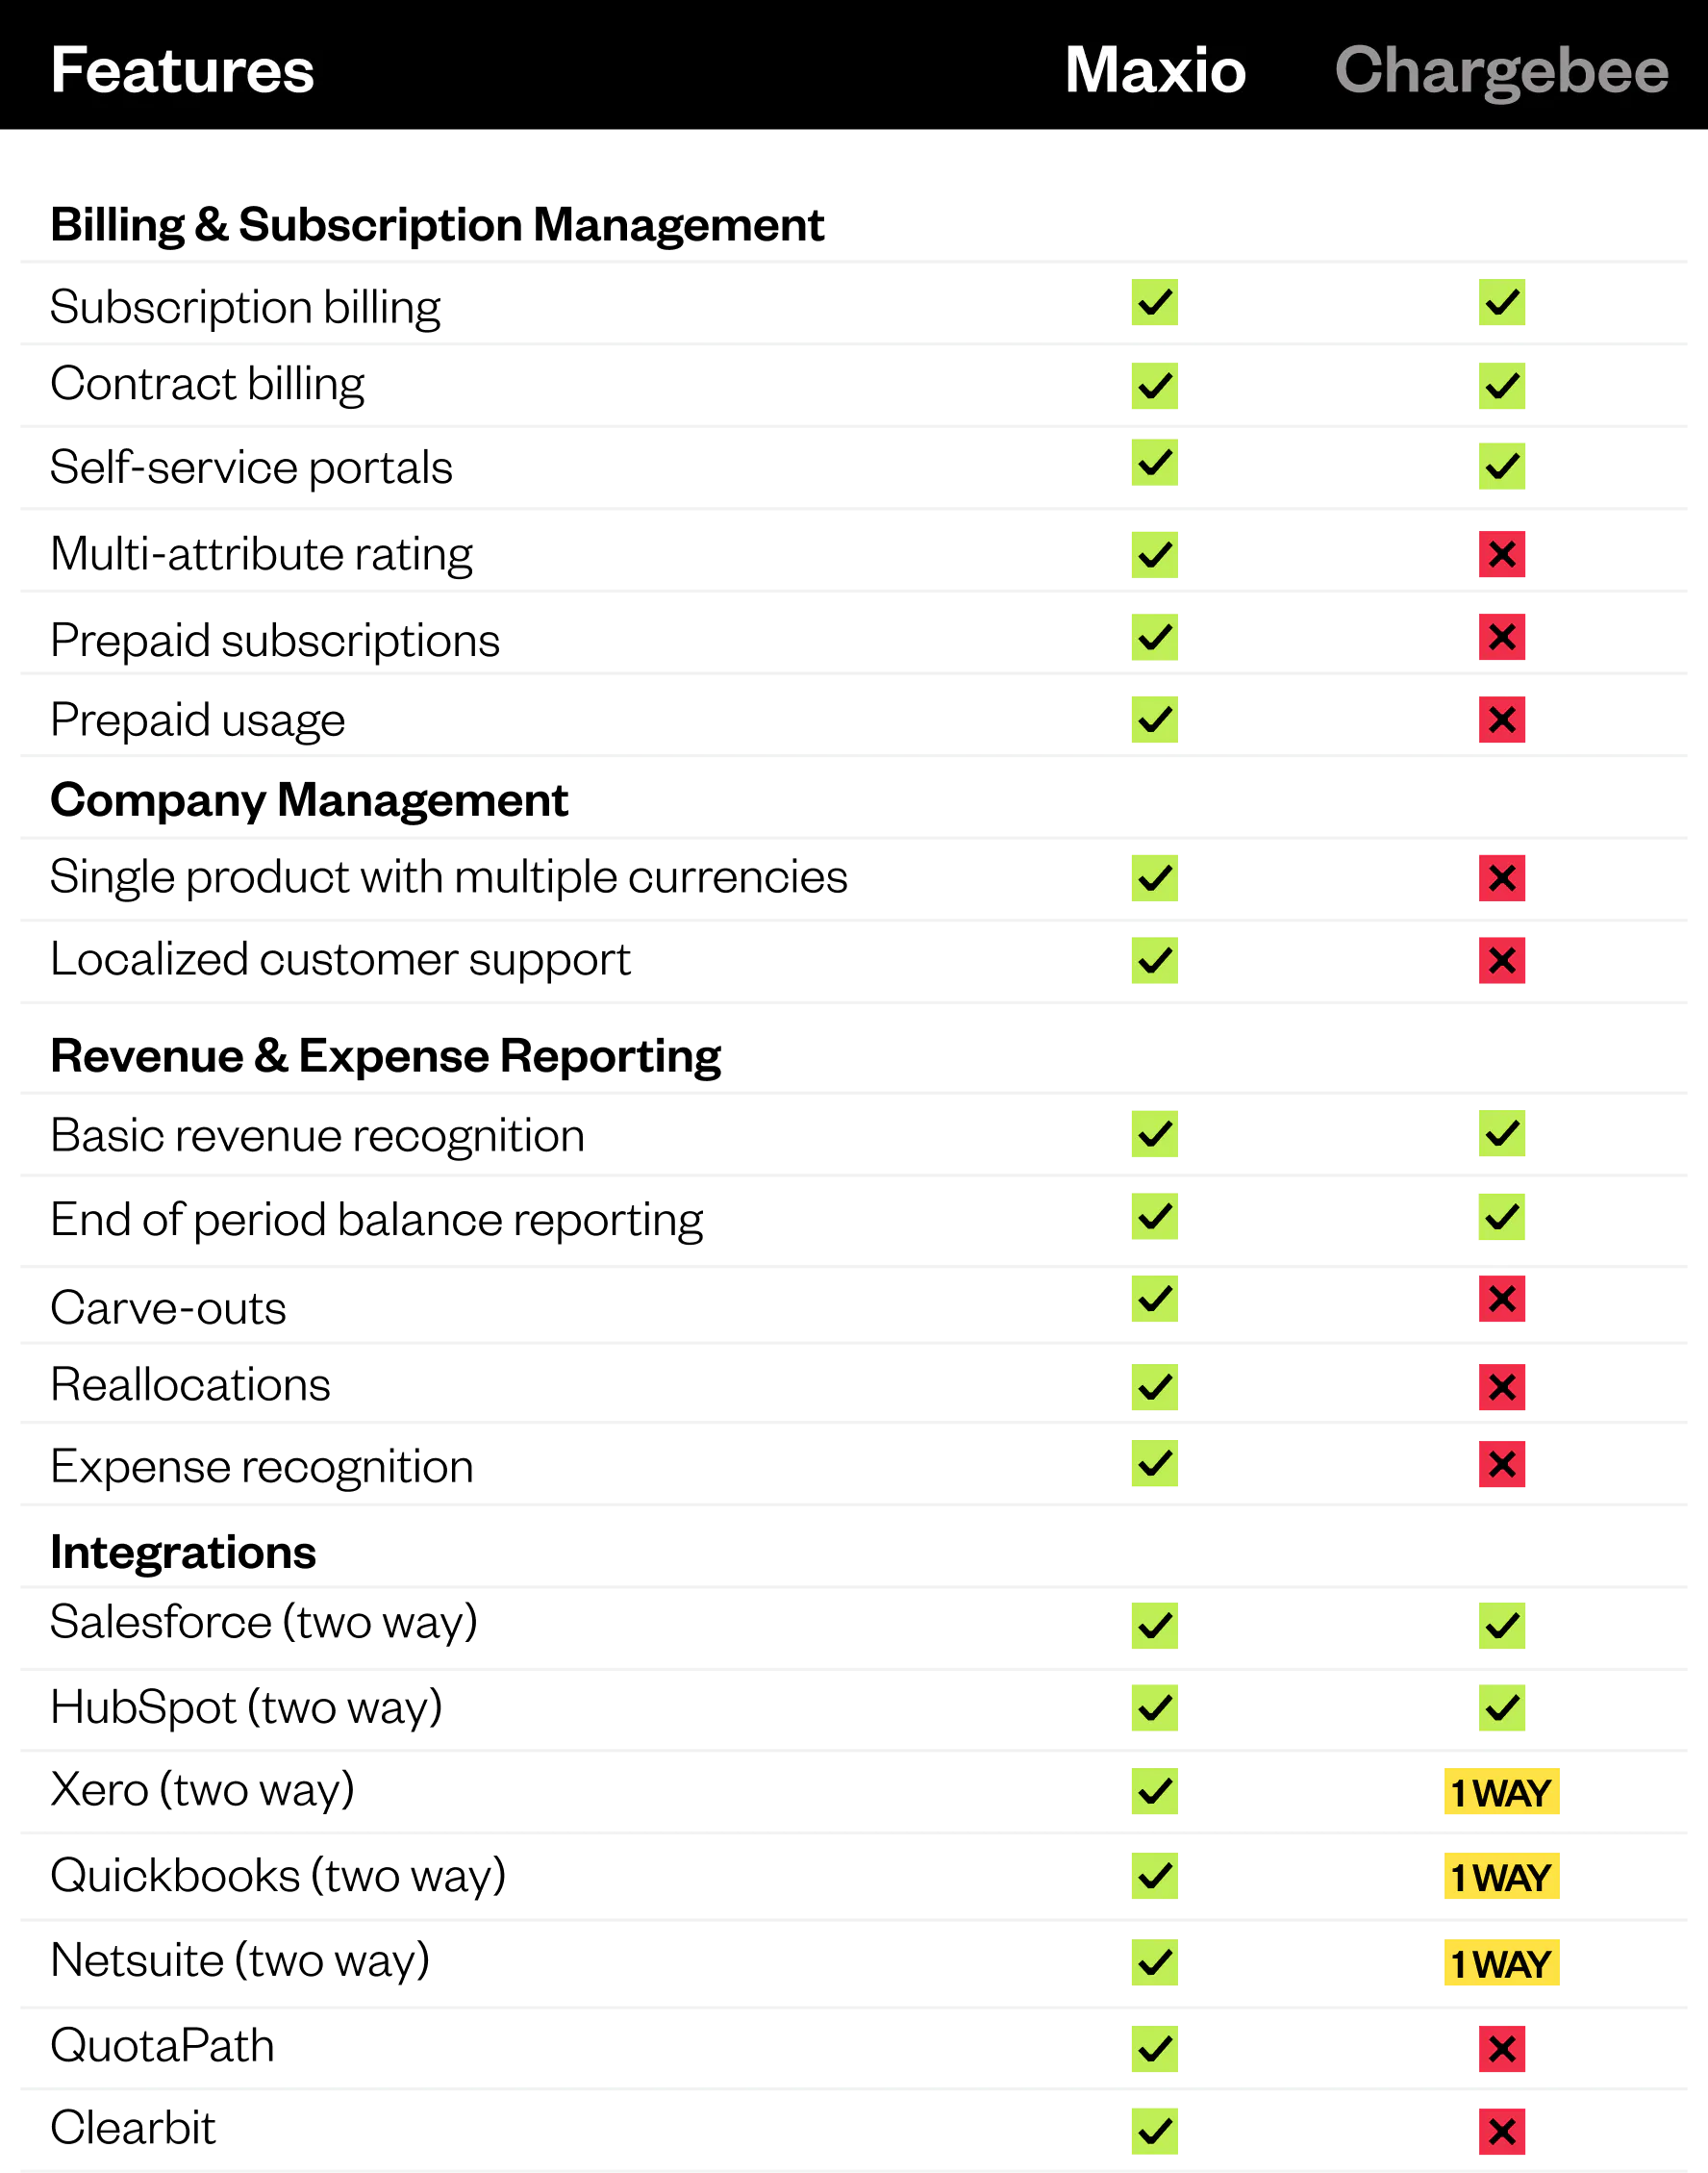 Chargebee vs Maxio Comparison Chart